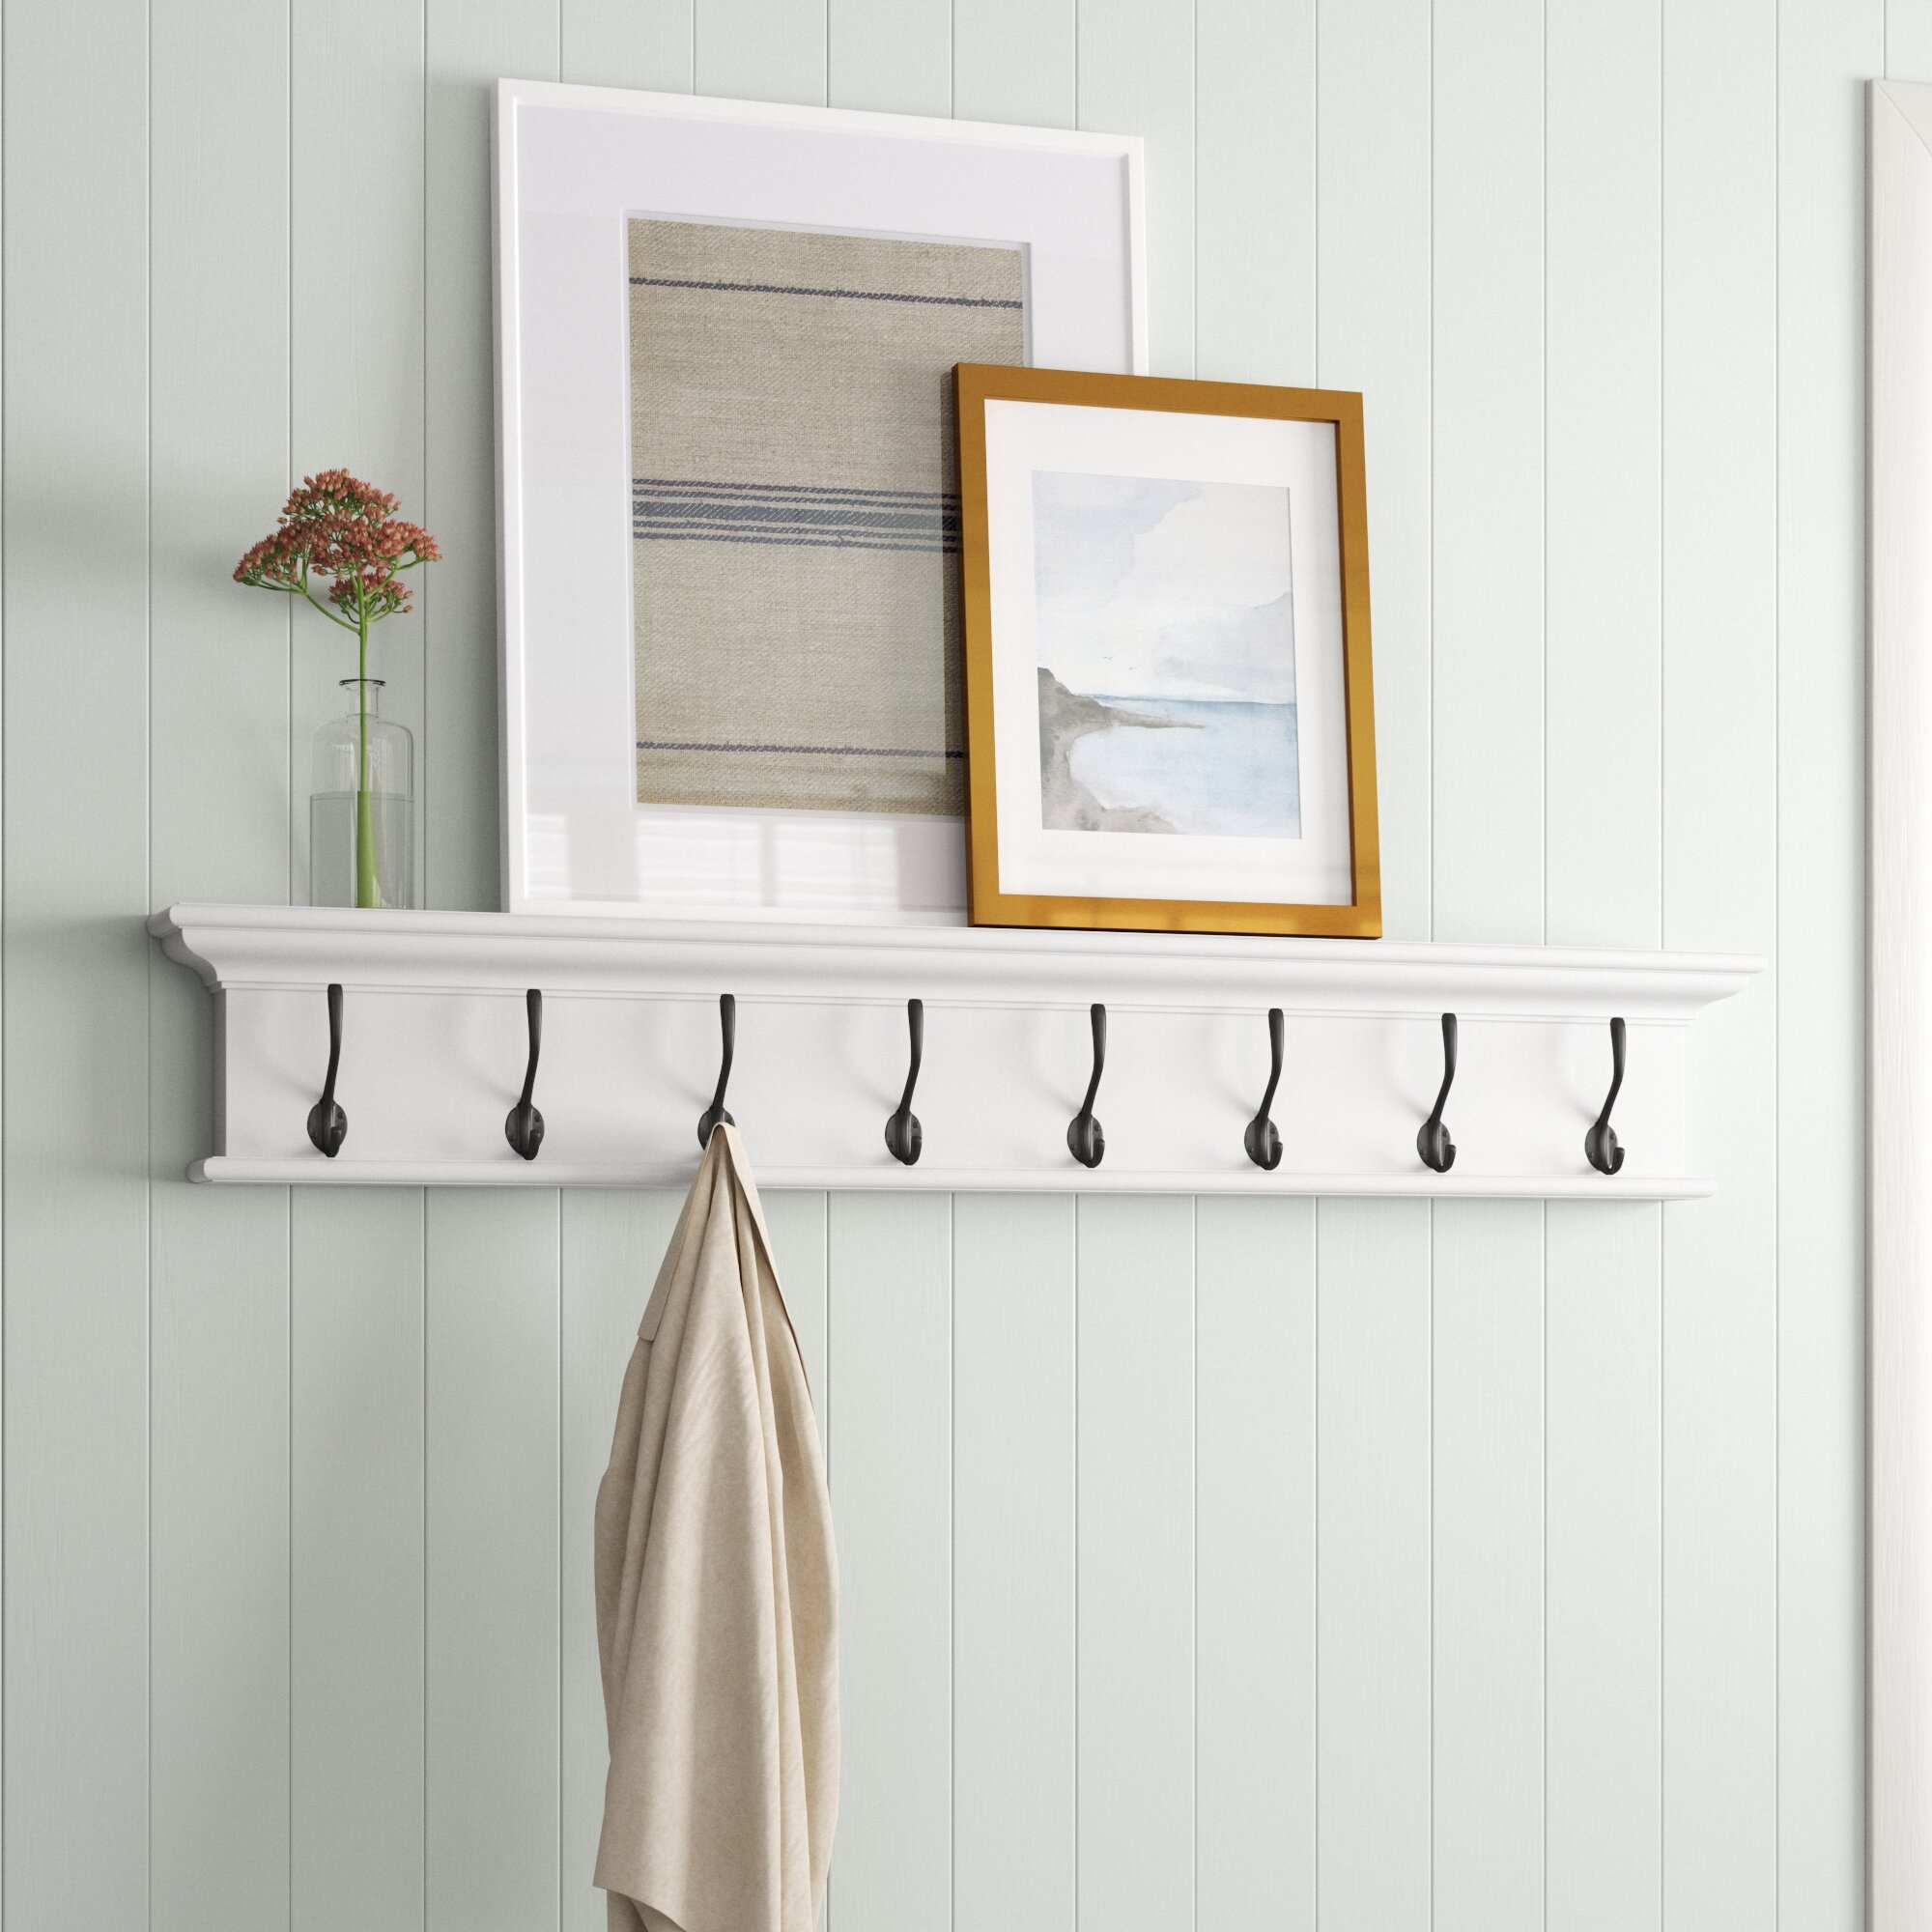 Coat Rack Wall Mounted Wooden, Pine White Clothes Hanger, Coat Hooks Wall/Door